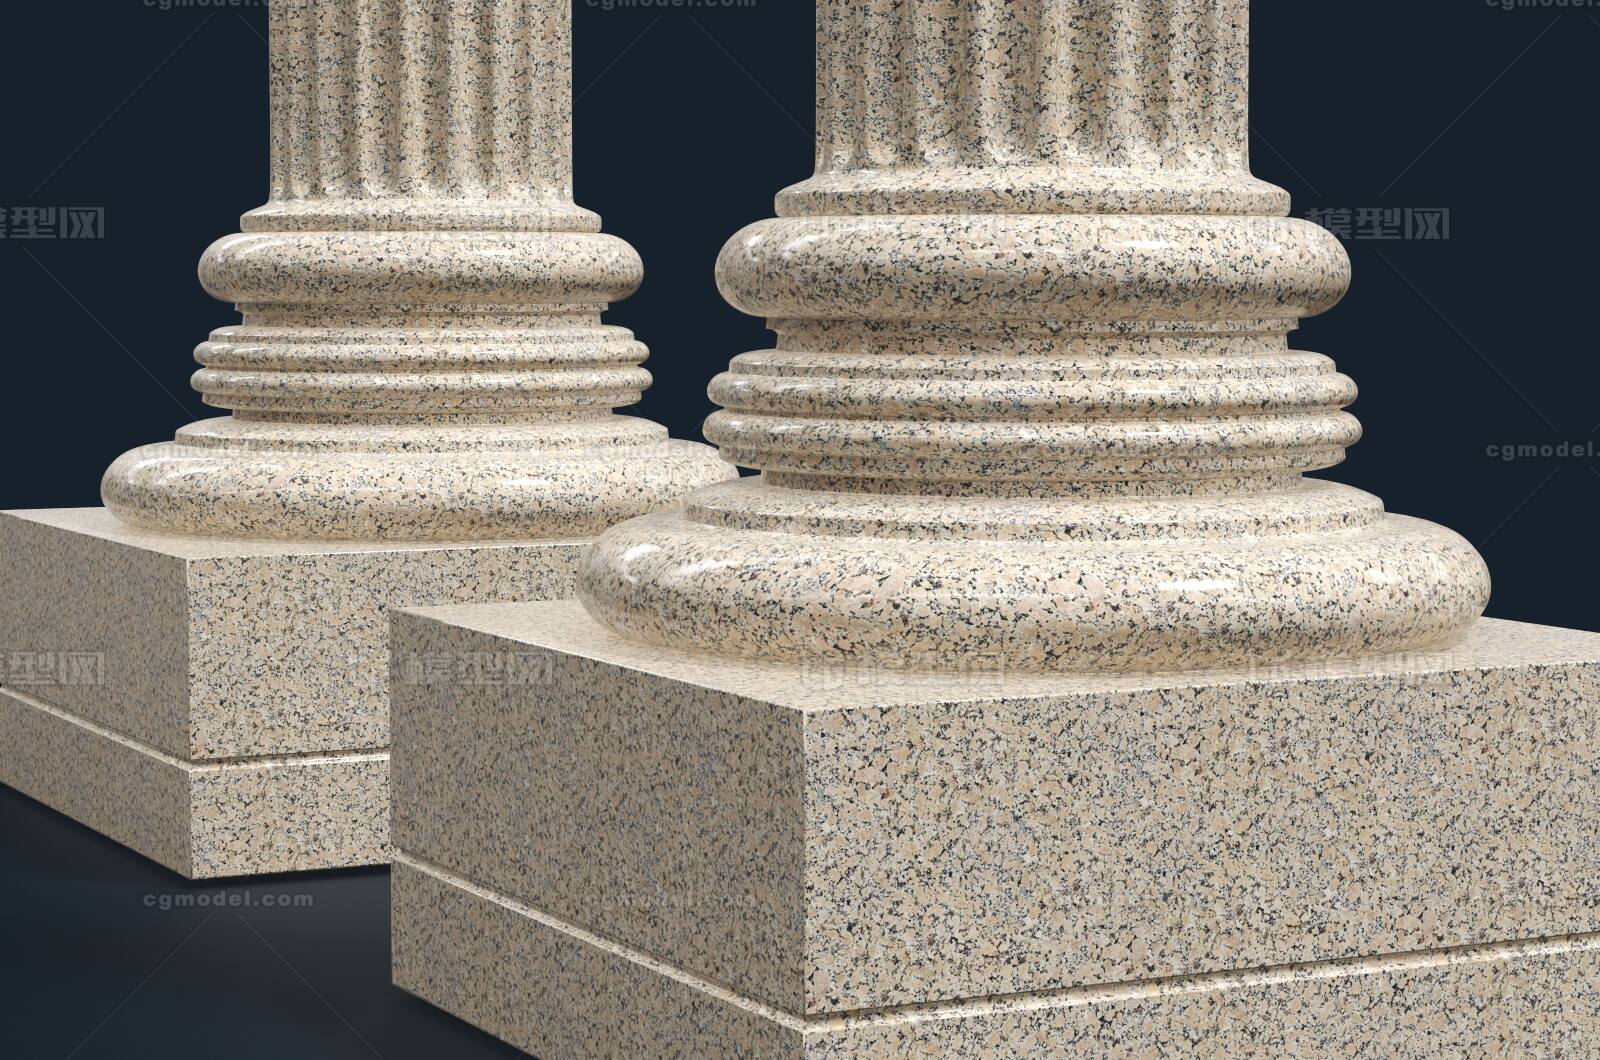 GRC罗马柱、欧式罗马柱、带槽罗马柱-东莞市欧艺装饰设计工程有限公司